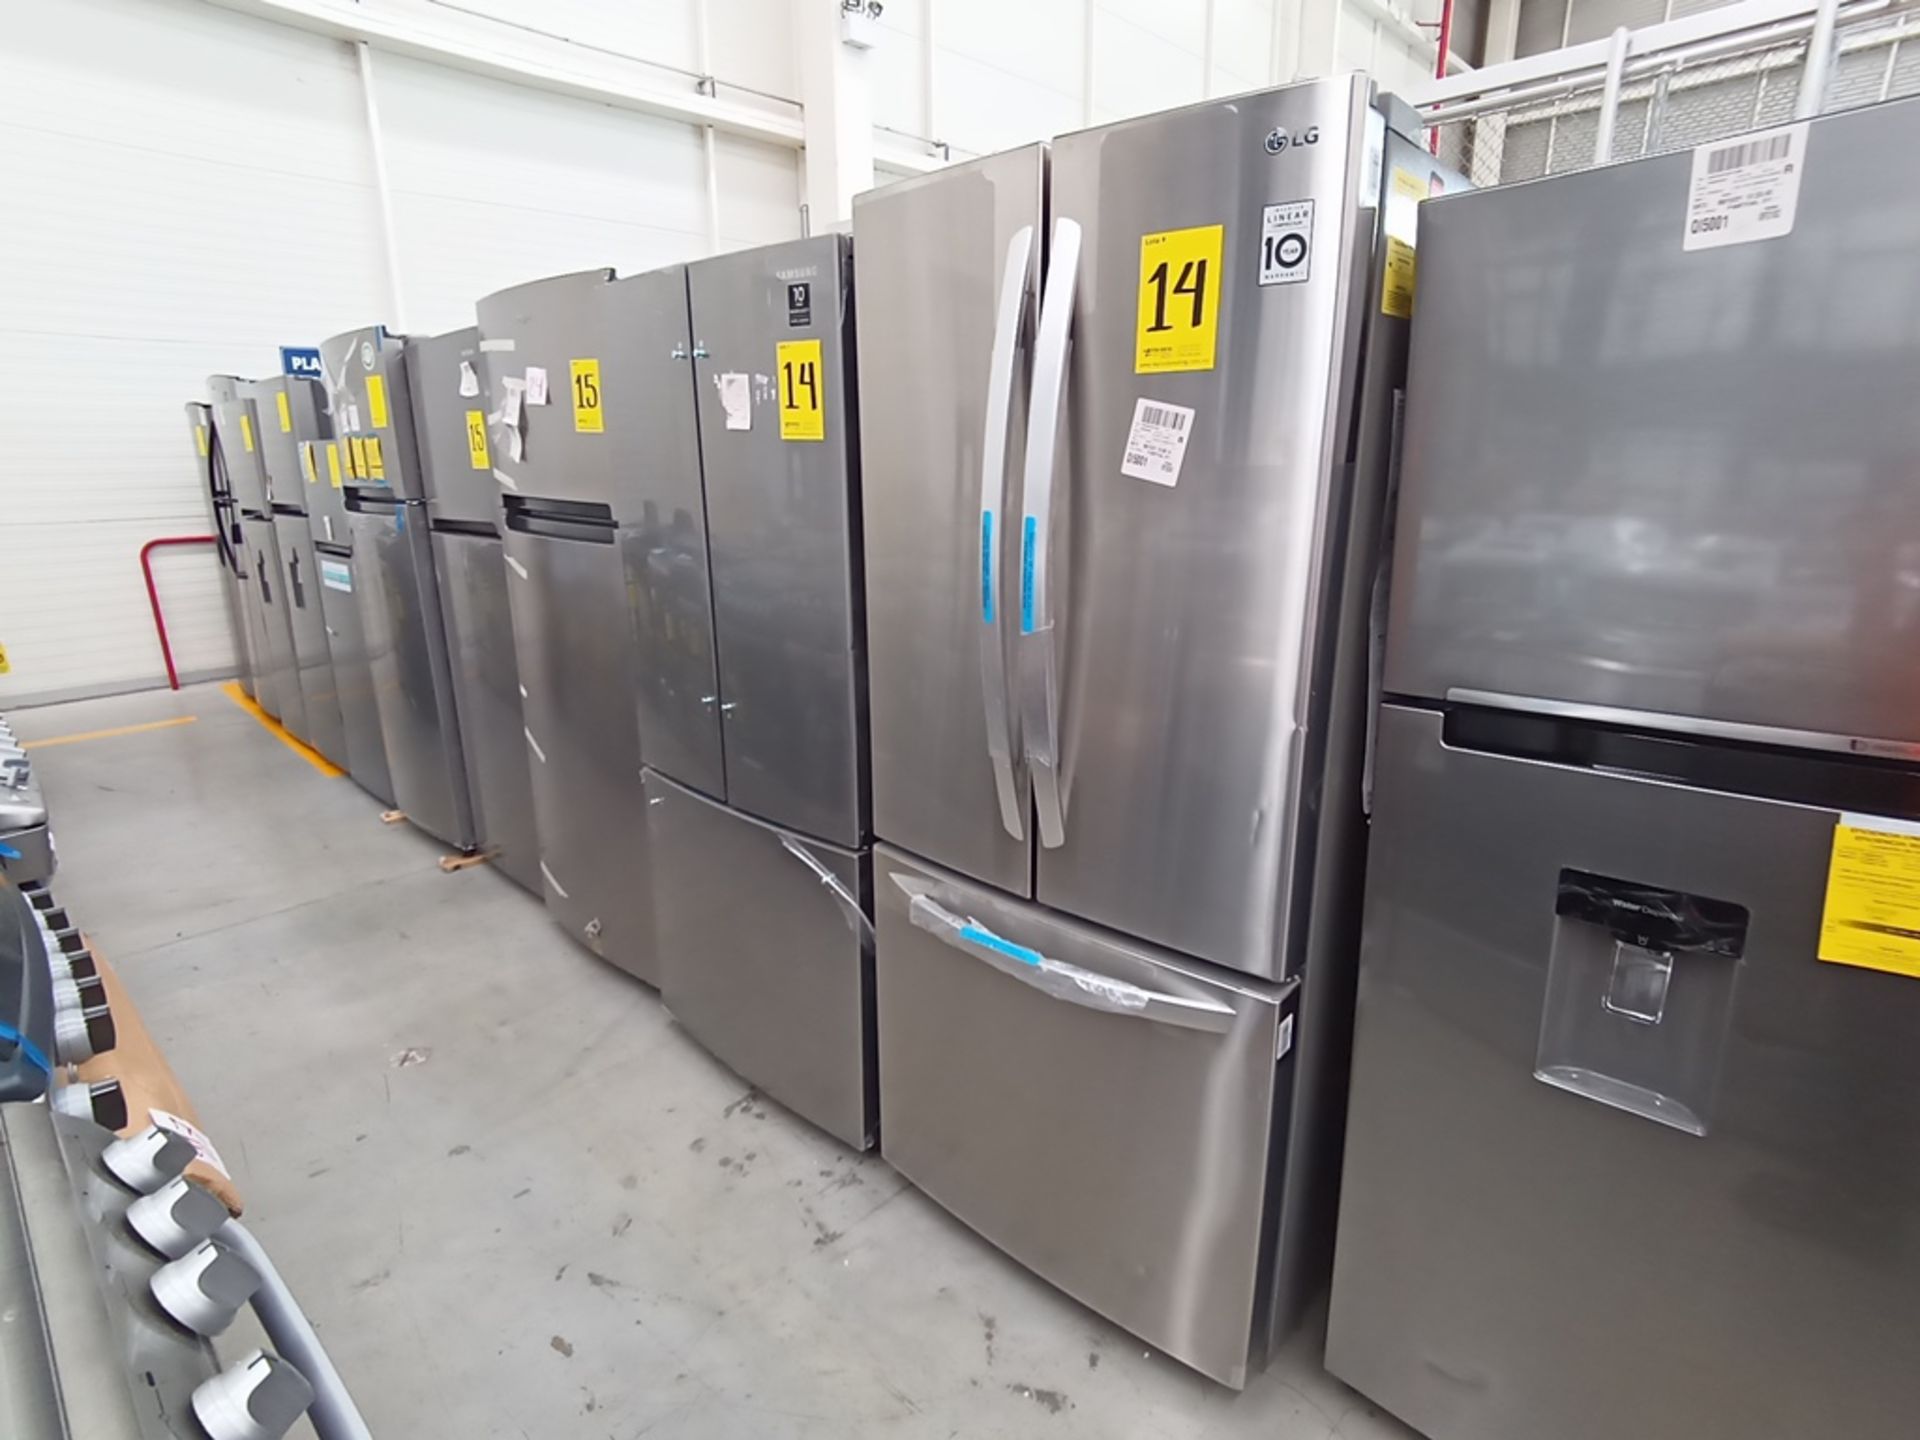 Lote de 2 refrigeradores contiene: 1 Refrigerador Marca LG, Modelo GF22BGSK, Serie 107MRMD4S595, Co - Image 5 of 16